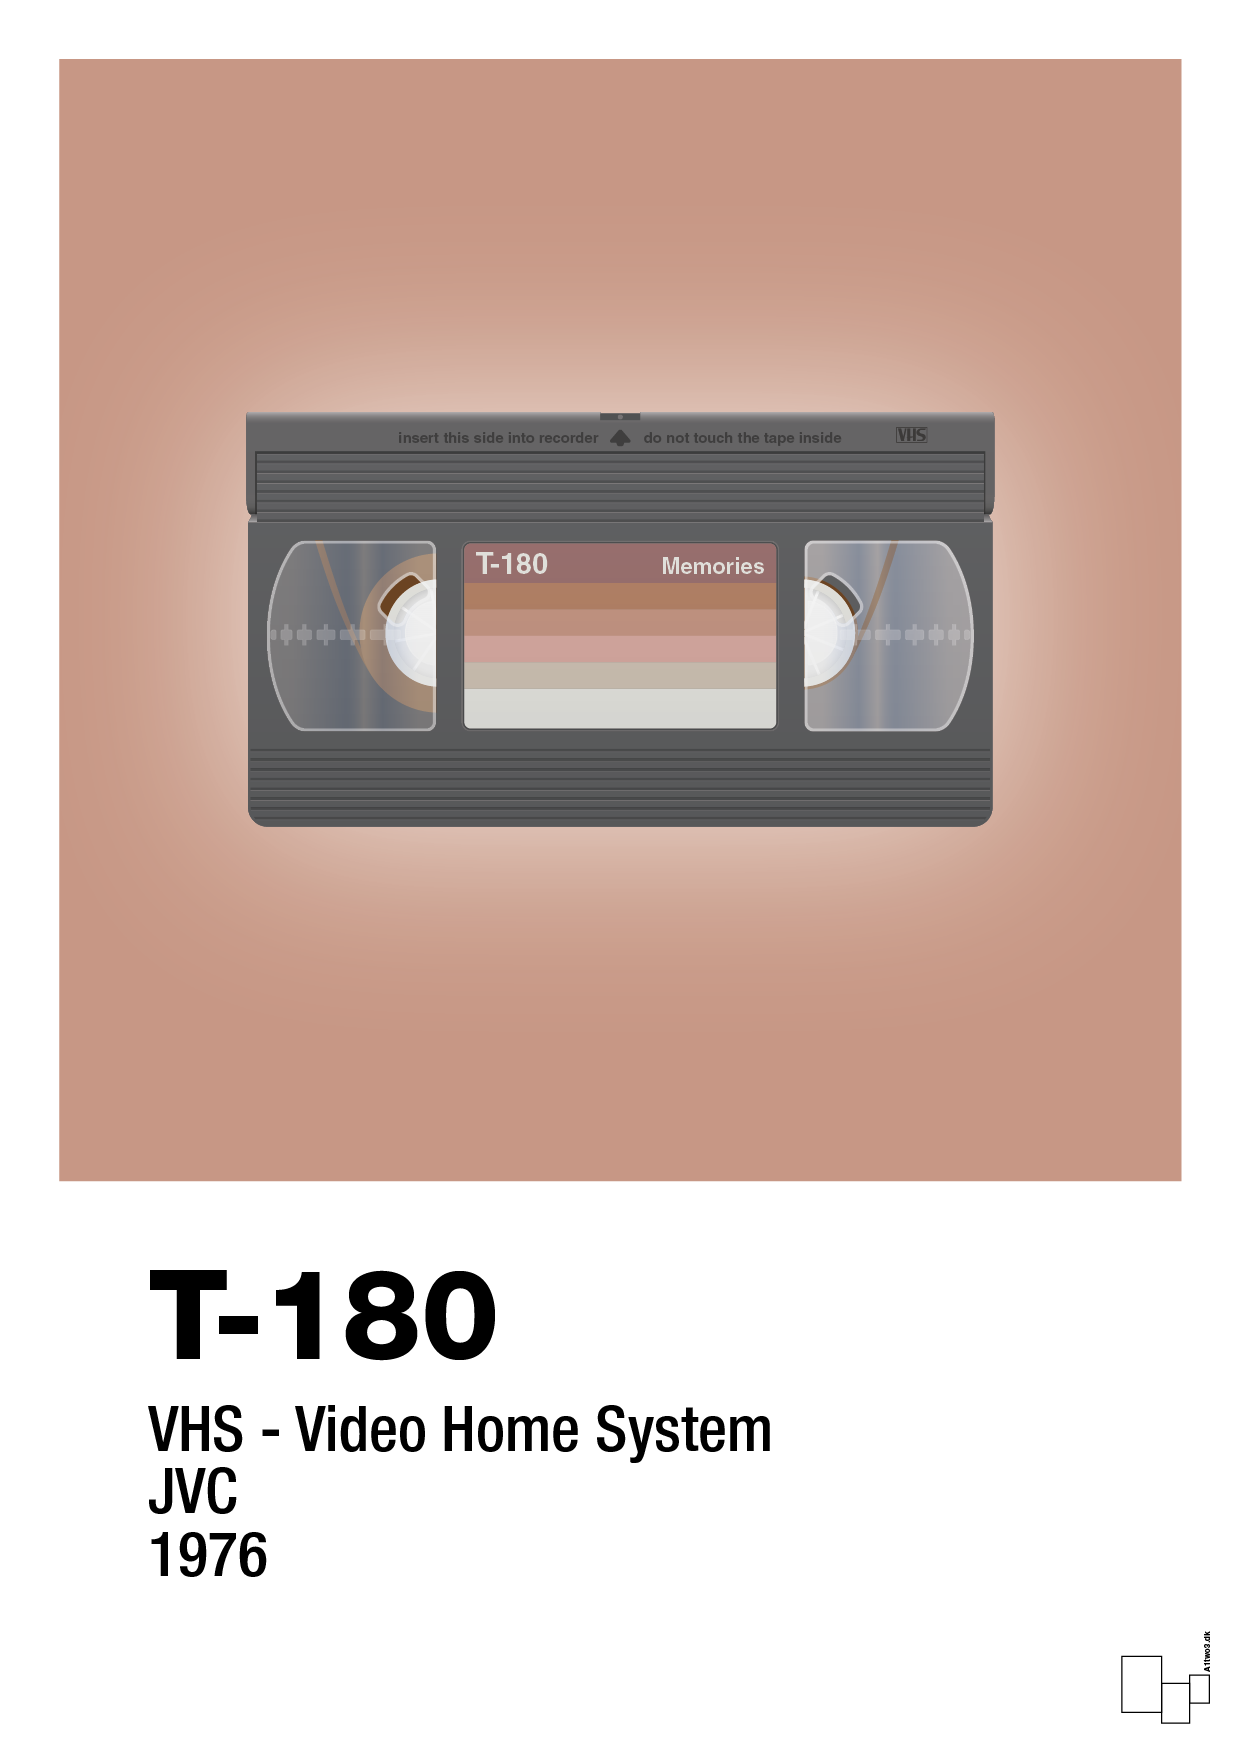 videobånd t-180 - Plakat med Grafik i Powder